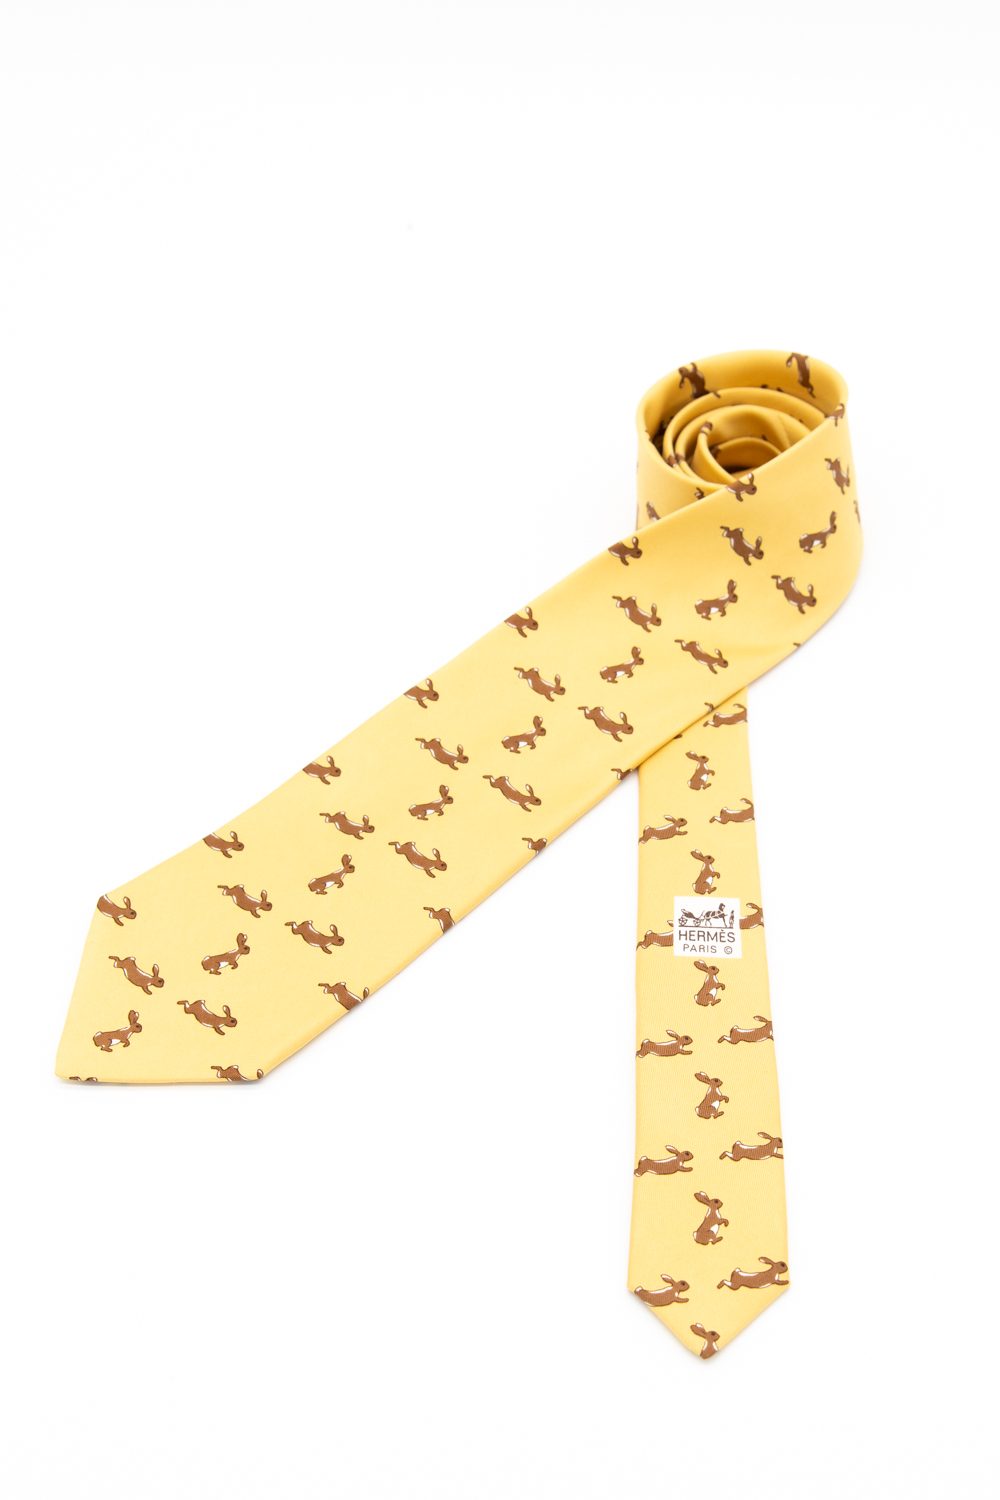 Hermès Krawatte mit Kaninchen-Motiven in Gelb